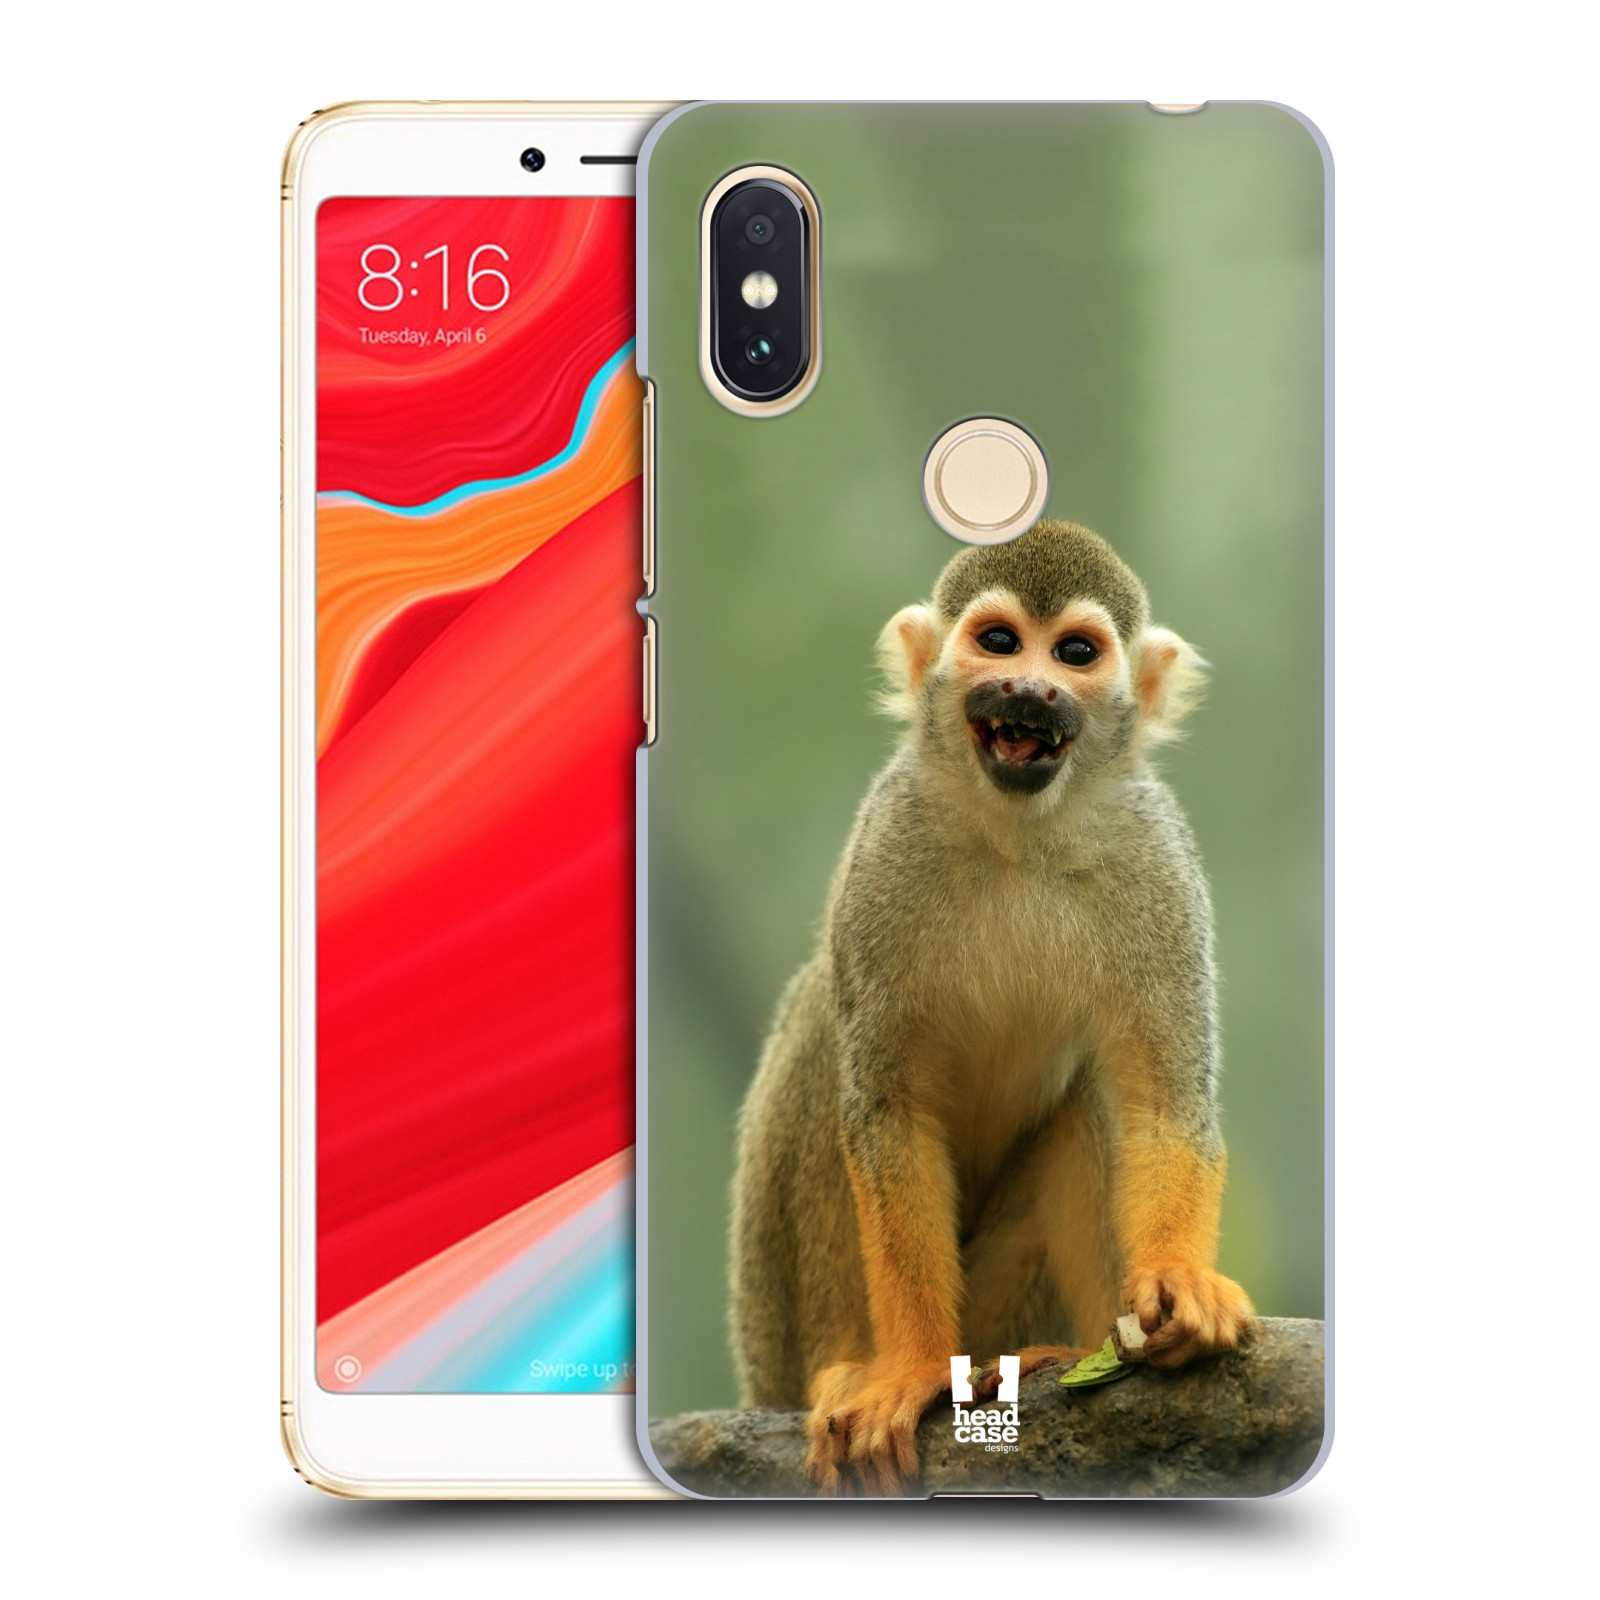 HEAD CASE plastový obal na mobil Xiaomi Redmi S2 vzor slavná zvířata foto opice